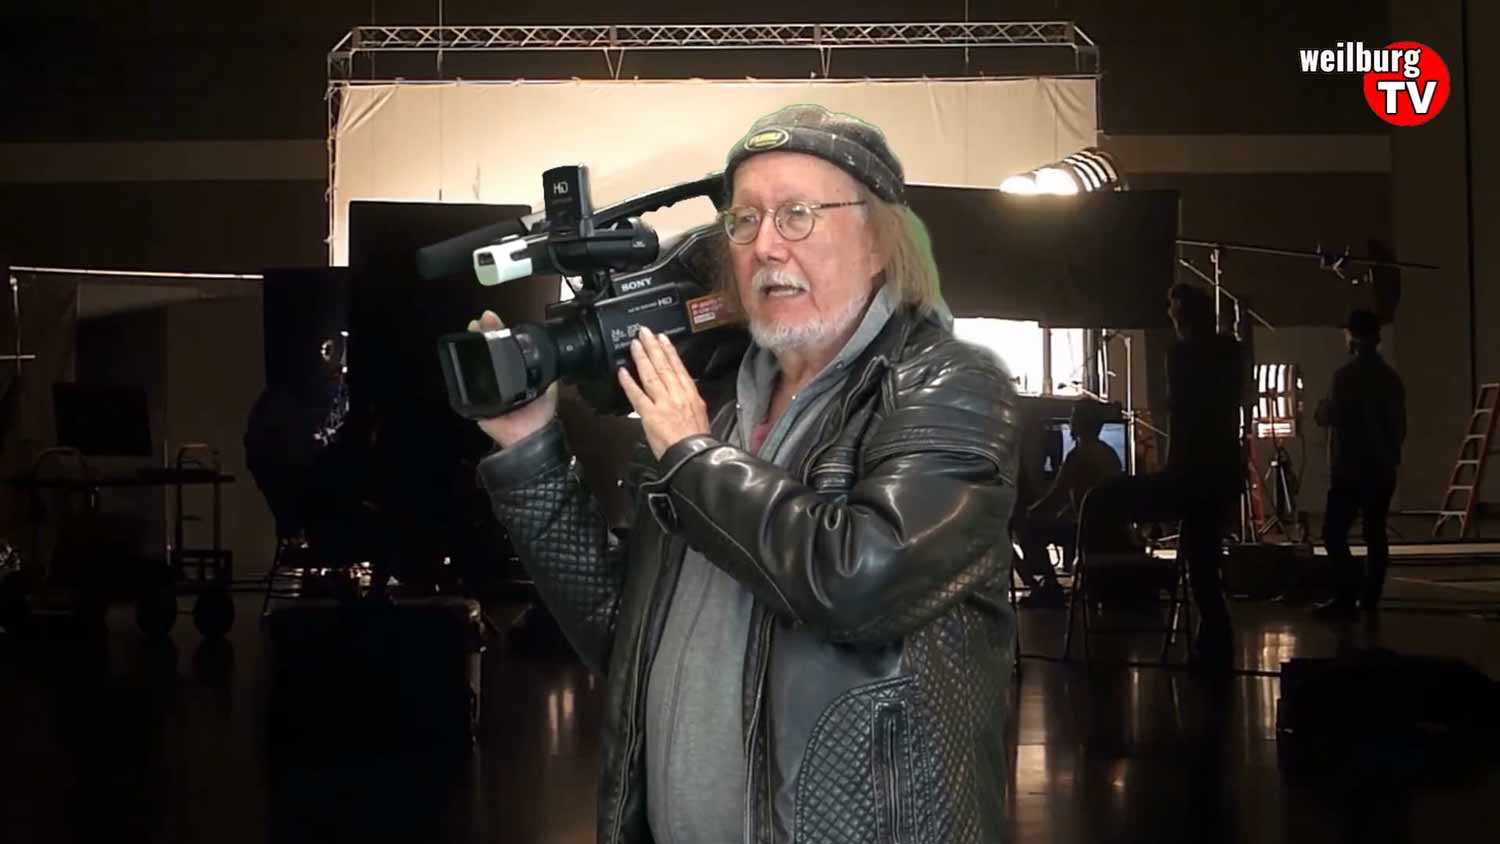 Talktime-Hessen: Mediapartner Weilburg-TV Kameramann Ralph Gorenflo